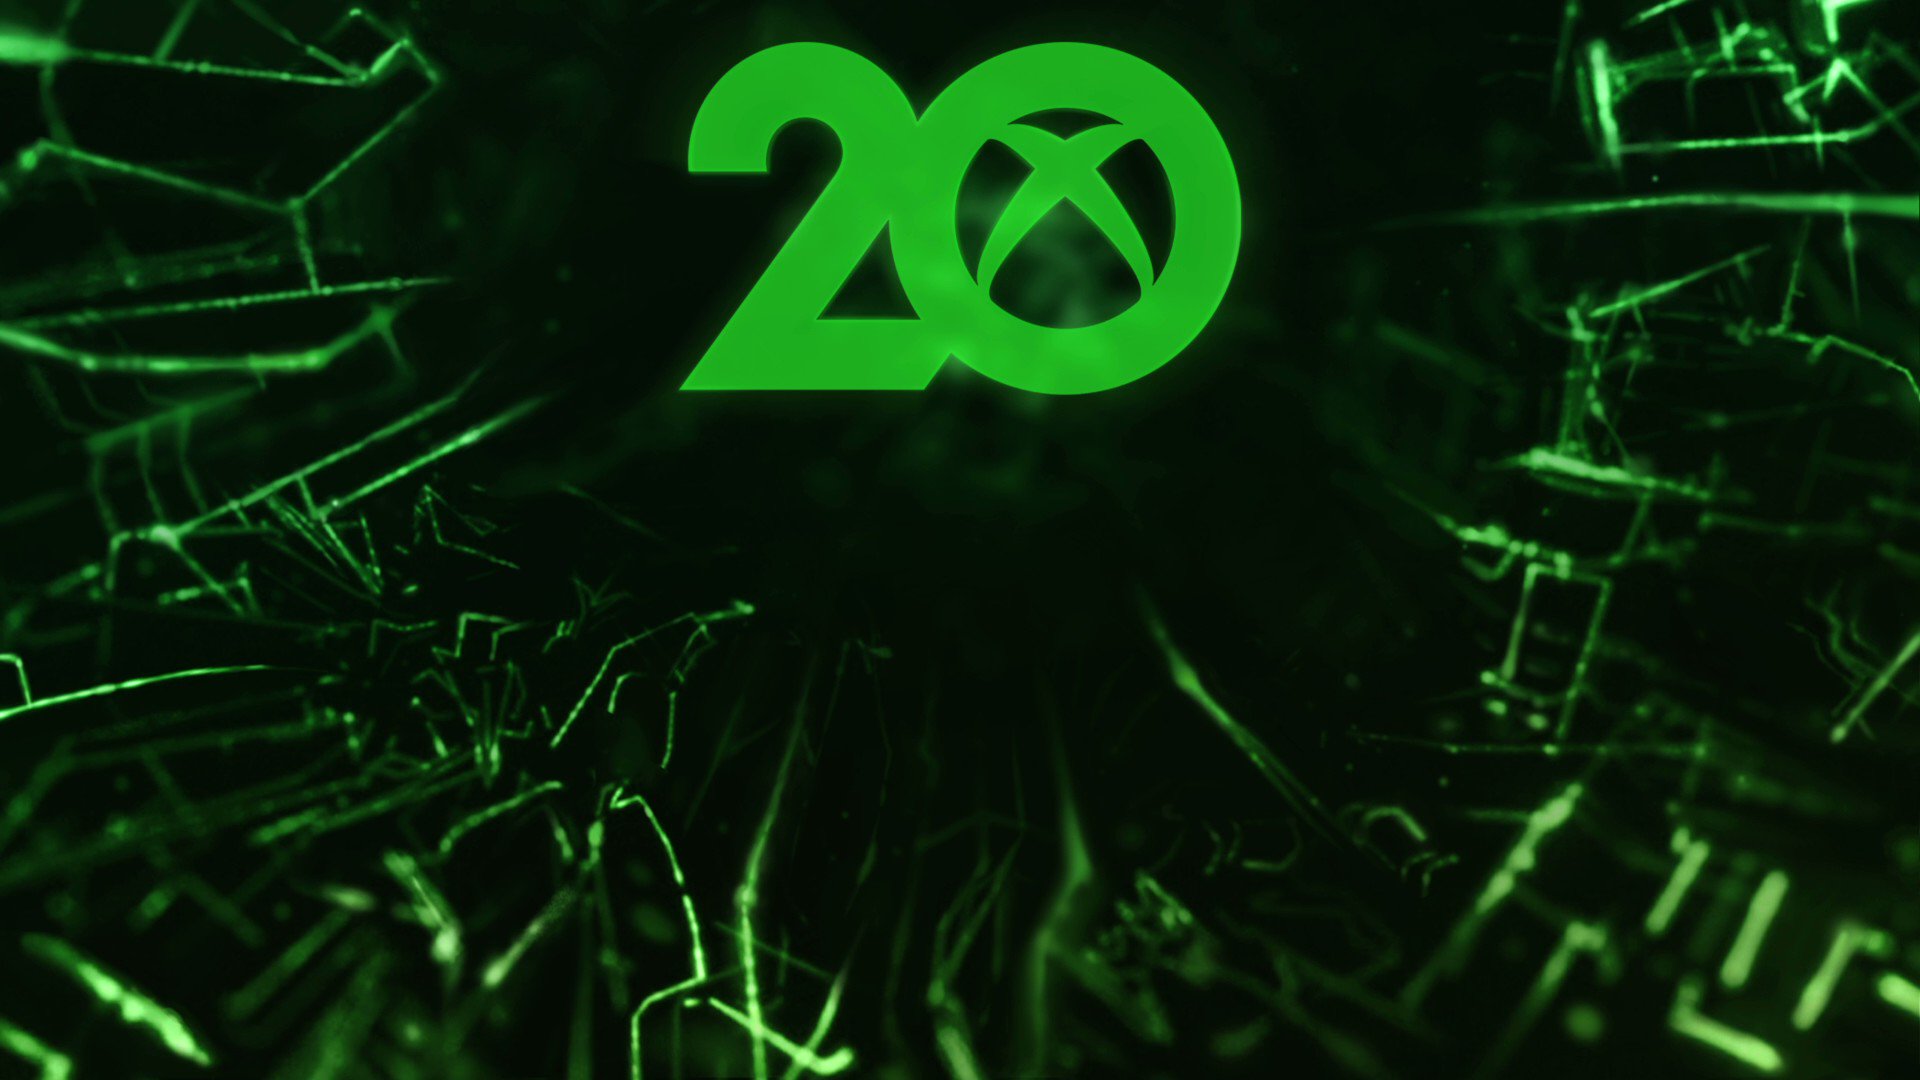 Chiếc tay cầm 20th Anniversary cho Xbox sẽ đưa bạn đến kỷ nguyên mới của trò chơi điện tử. Bức ảnh đằng sau đó khoe sự độc đáo và đẳng cấp của chiếc tay cầm này, hứa hẹn sẽ mang lại trải nghiệm chơi game đỉnh cao cho người chơi.